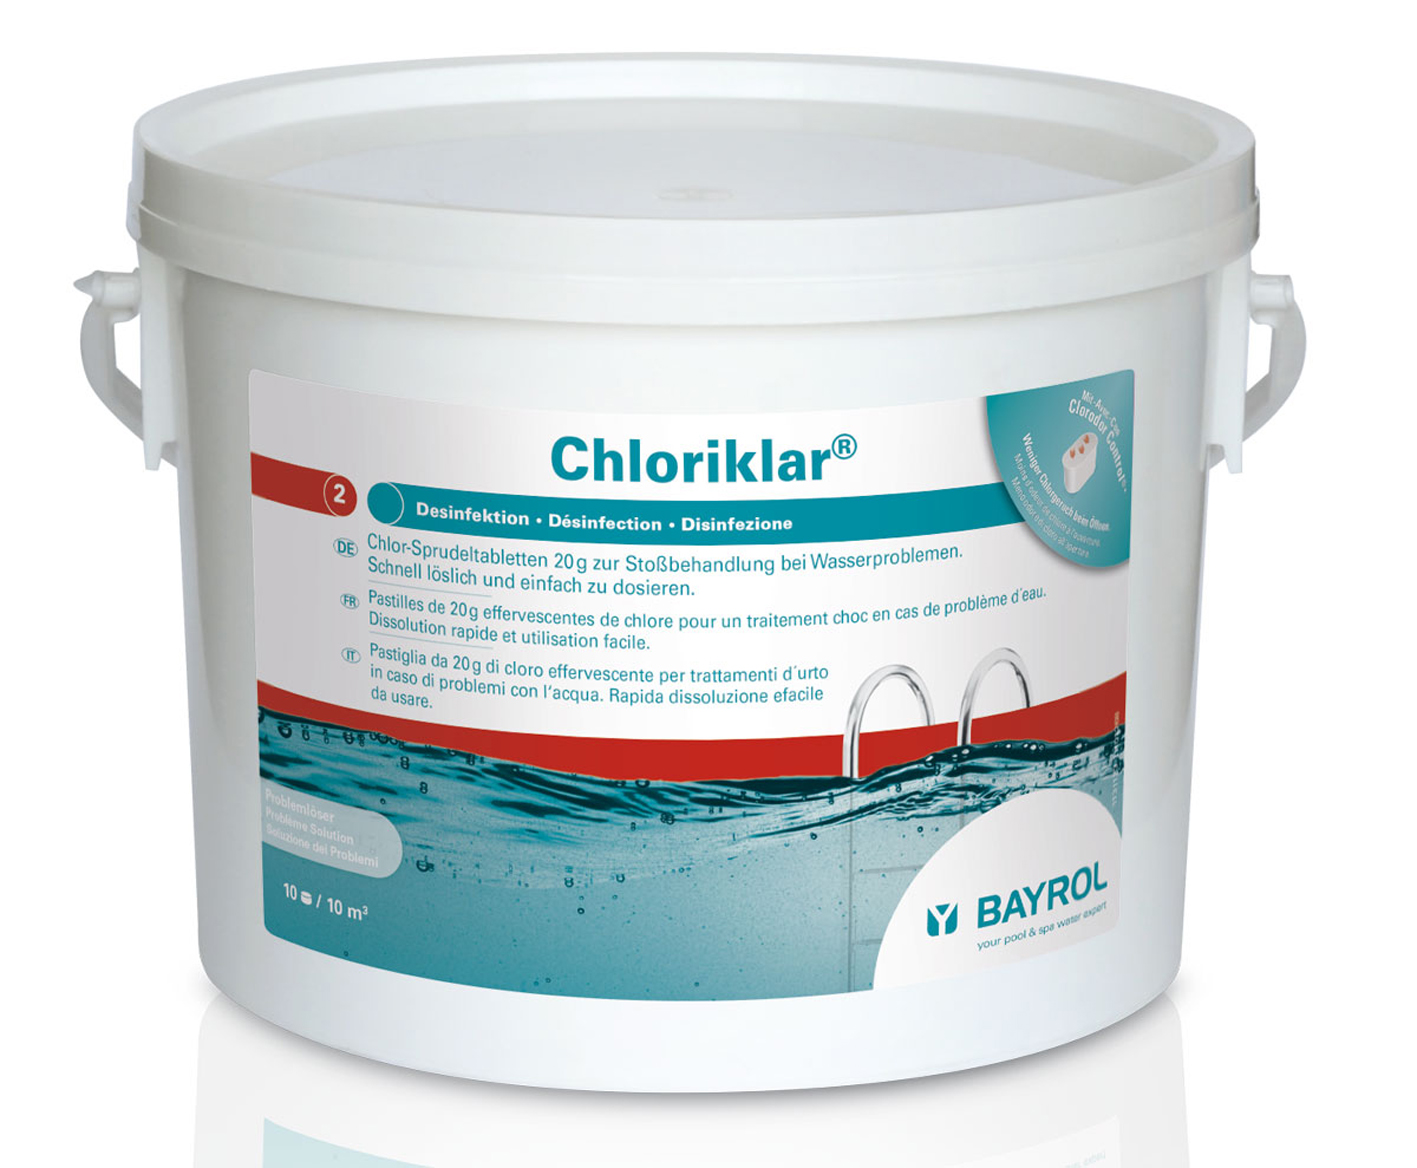 Bayrol Chloriklar 3 kg Eimer mit Clorodor Control Kapsel